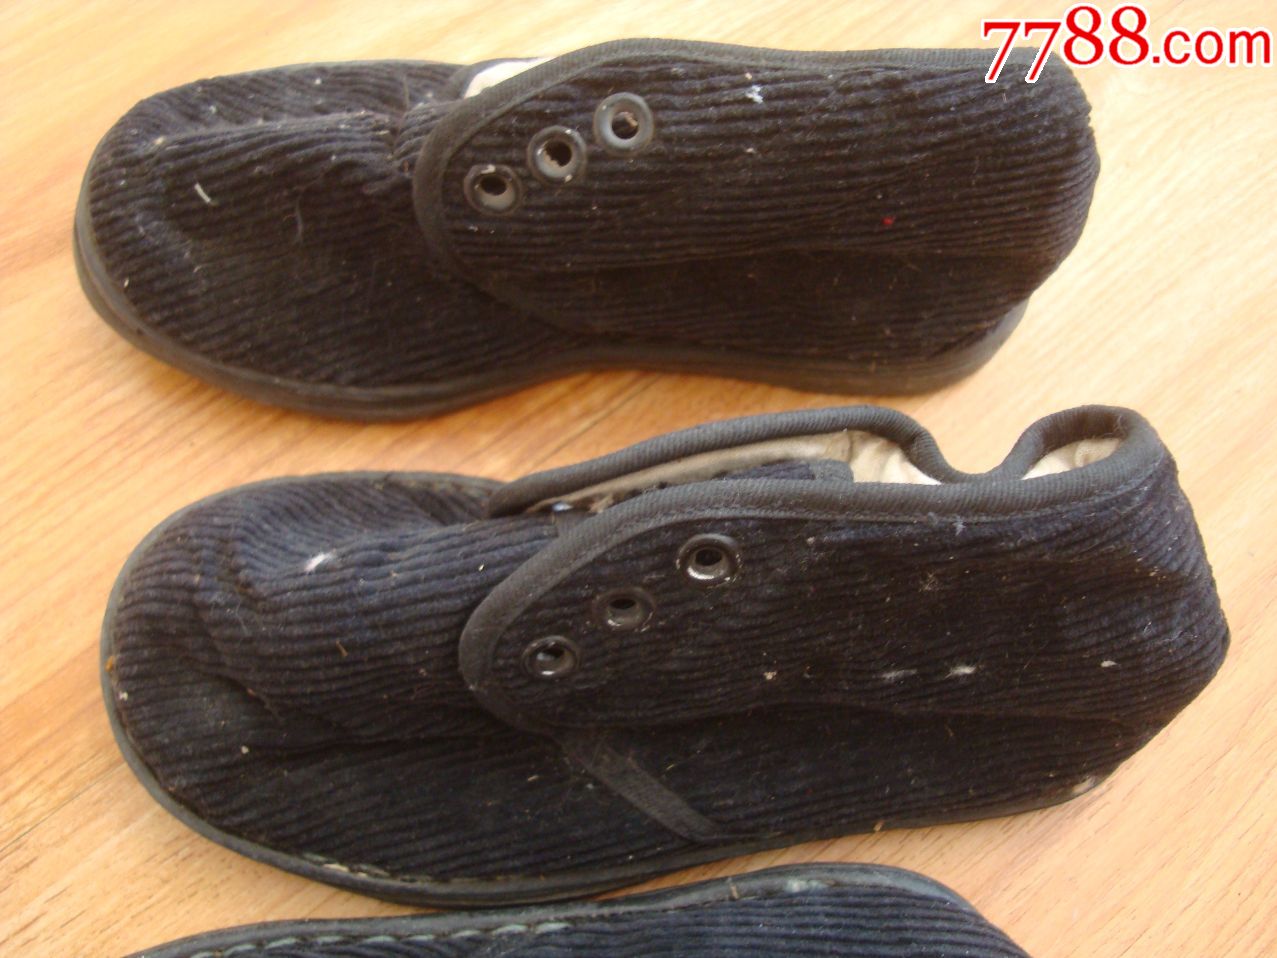 库存未穿过―儿童棉鞋24双合售―锦州市制鞋厂生产